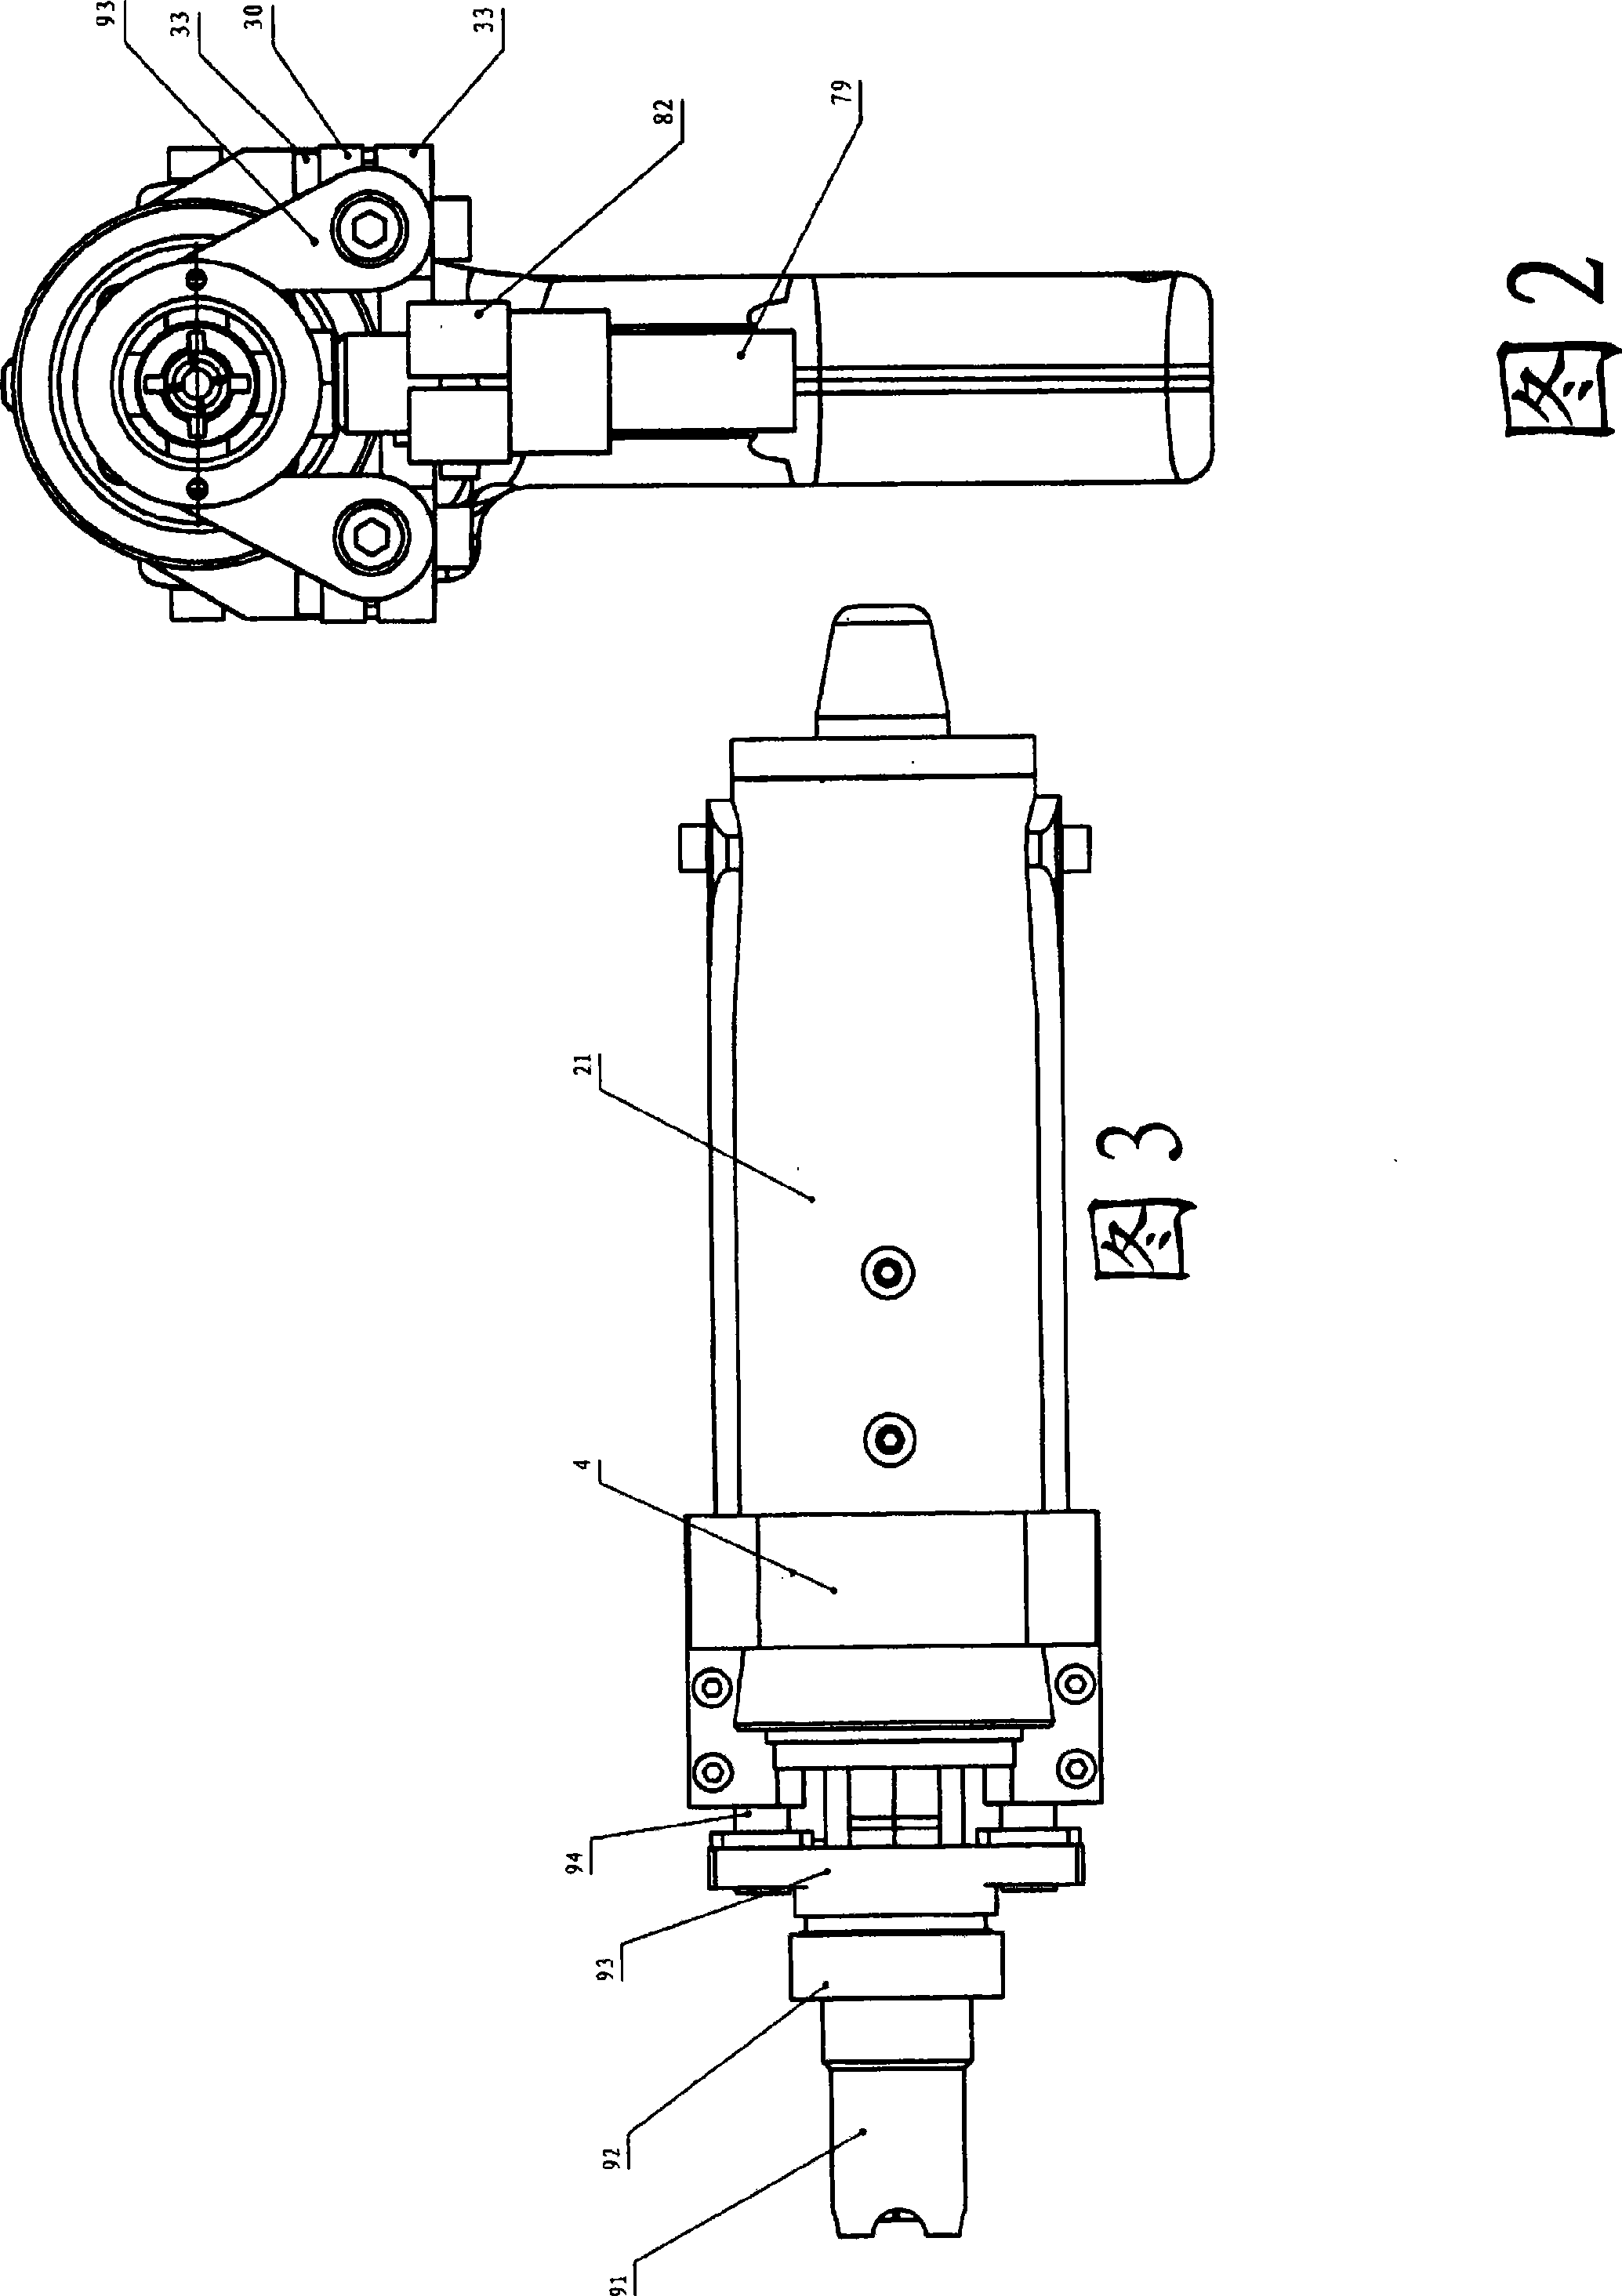 Arc discharge type double-screw bolt welding gun